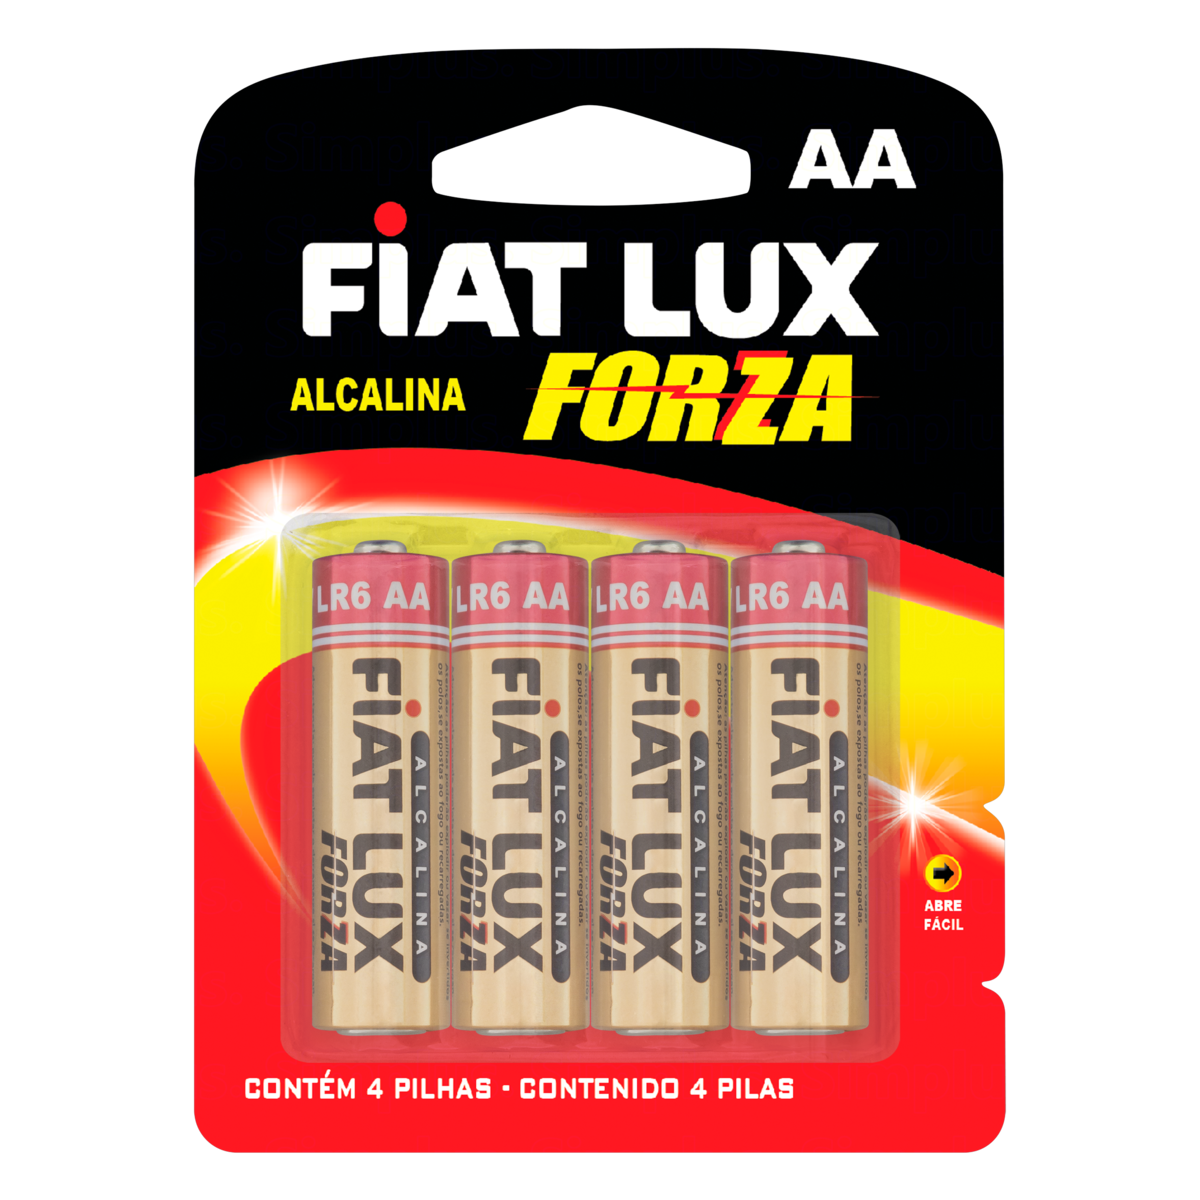 7896007904273 - PILHA ALCALINA AA LR6 FIAT LUX FORZA 4 UNIDADES 1,5V